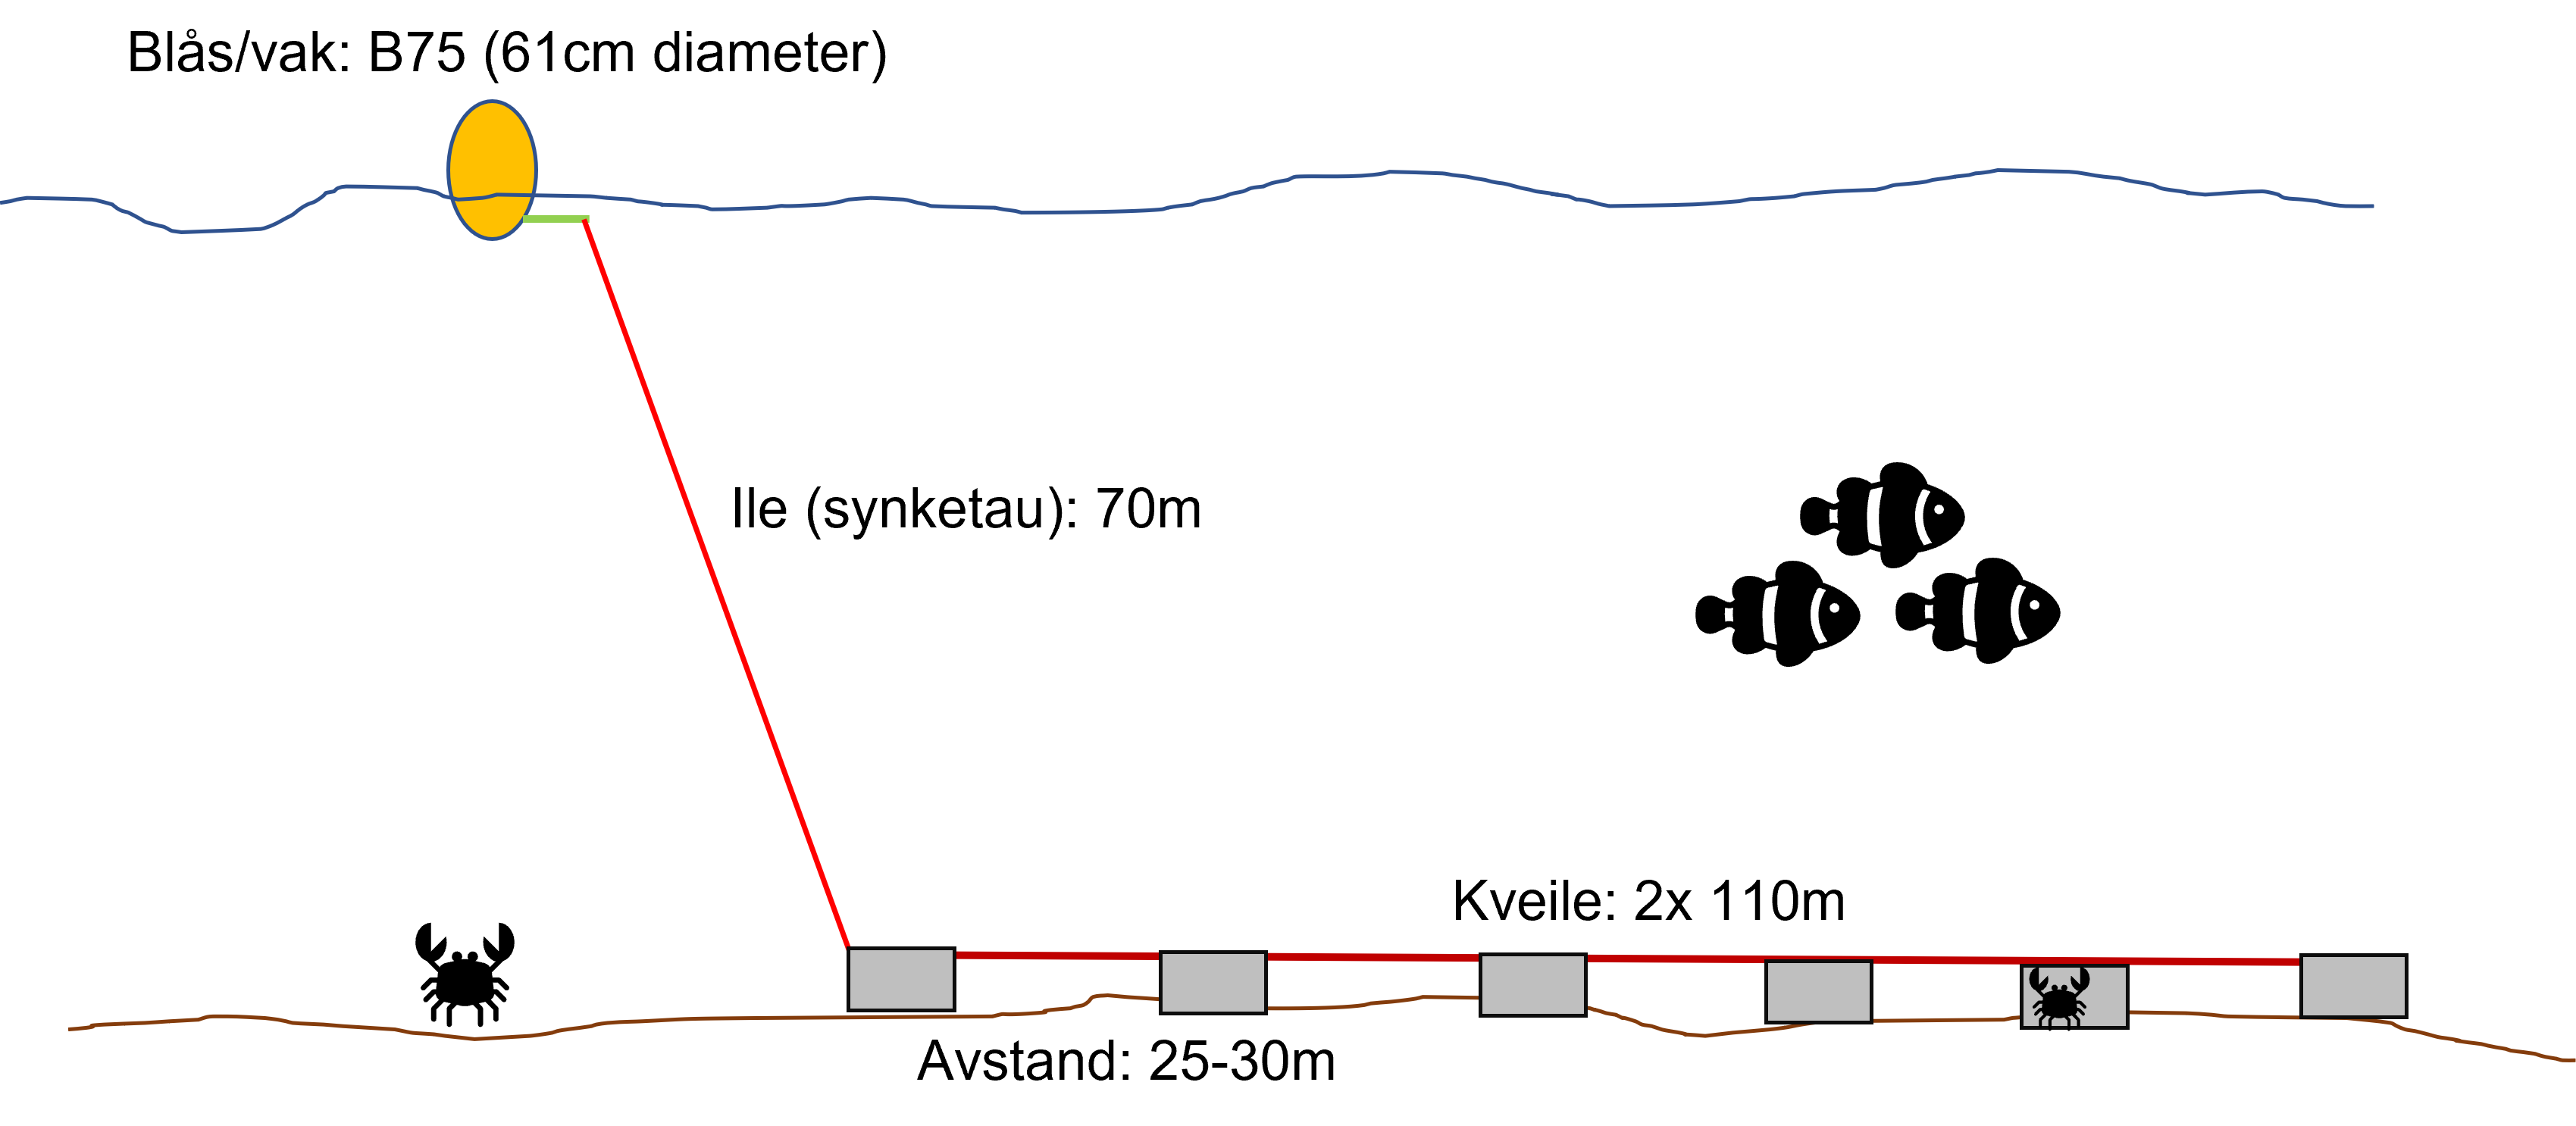 Oppsett av lenker med taskekrabbeteiner brukt i under krabbetoktet i Troms. Seks sorte polyetylen teiner ble satt i lenker med 25-30 meter mellom hver teine. 